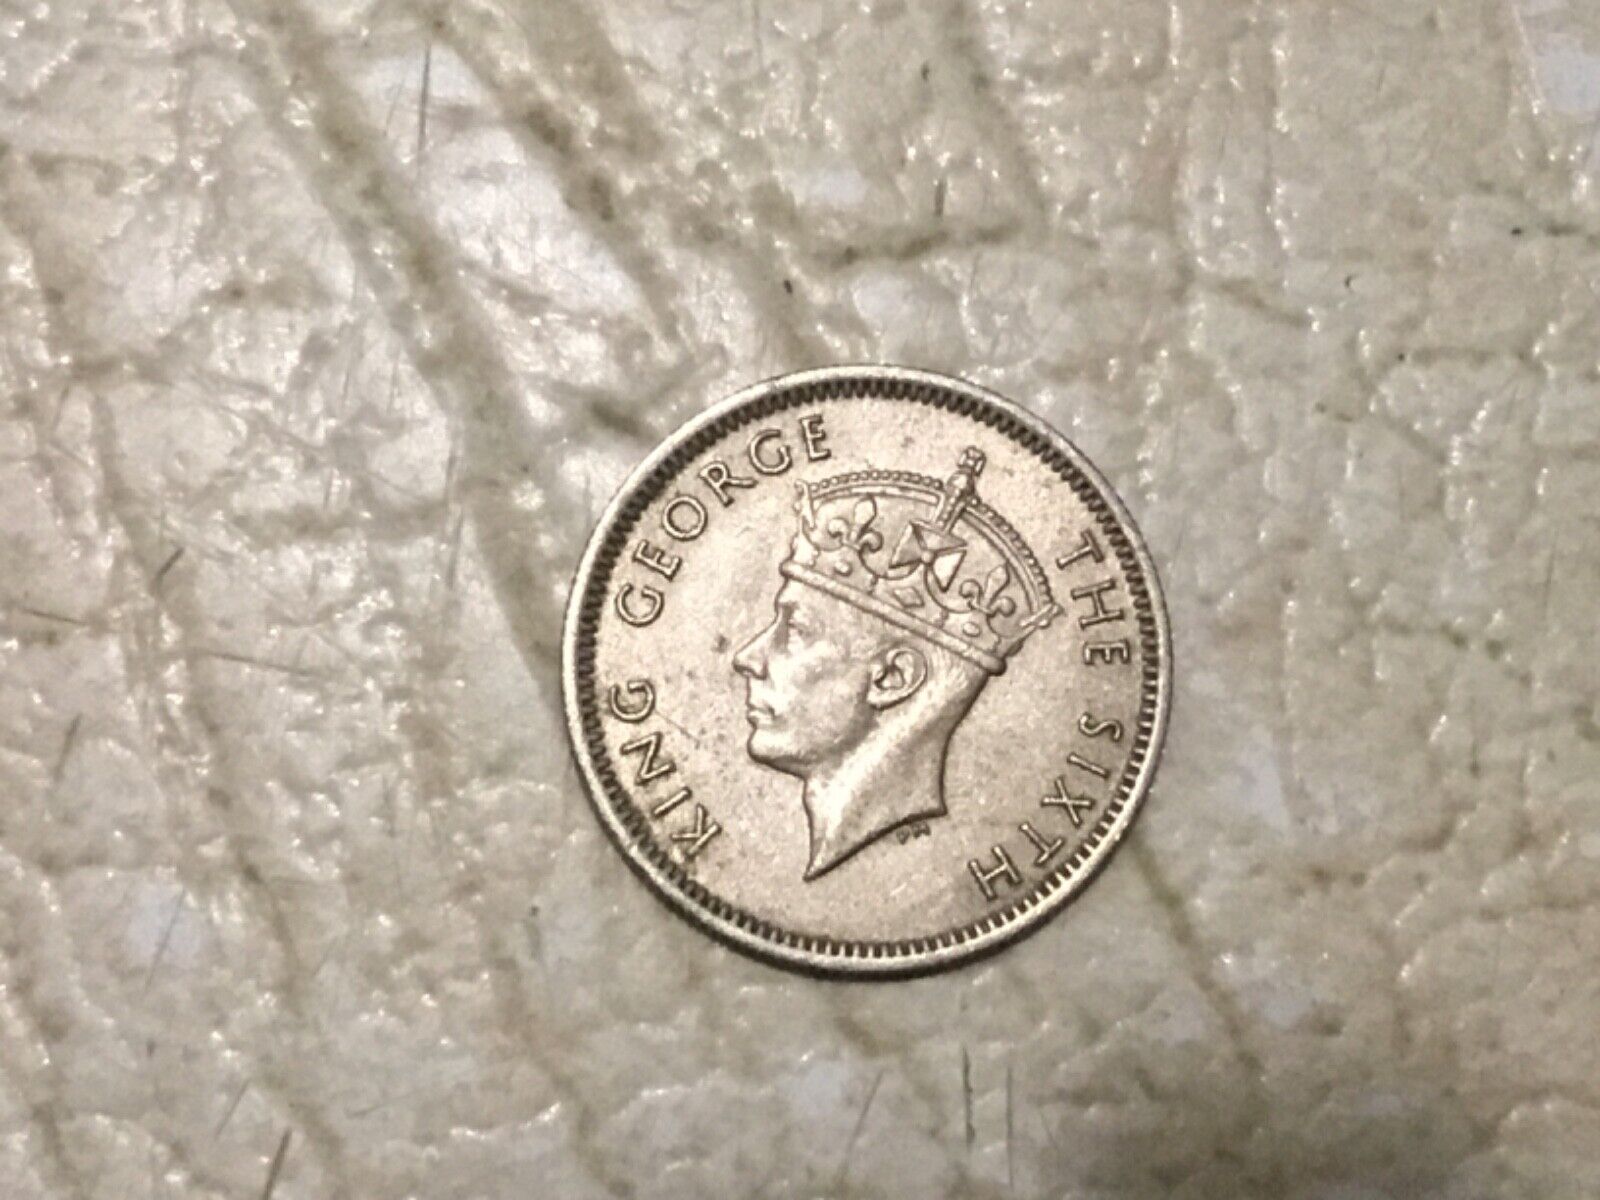 Rare Uk Coin King George V 1950 Malaya 10 Cent